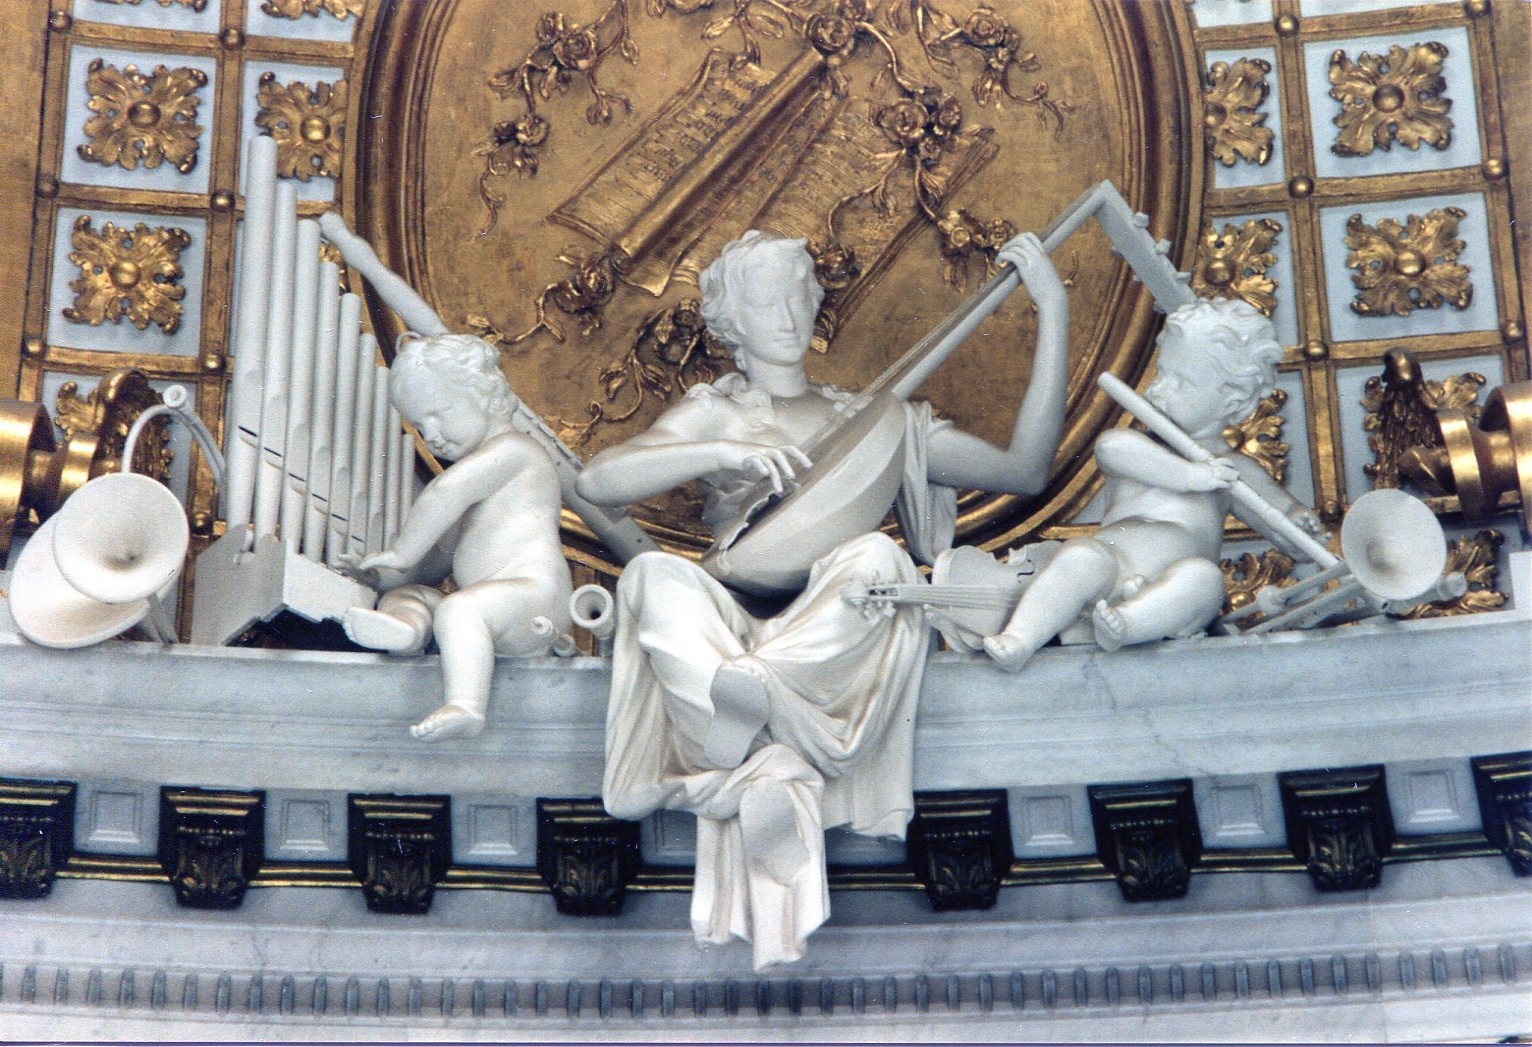 Ebenhecht, Georg Franz: Allegorie "Die Musik", 1745-1747, Stuck, Skulpt.slg. 236. (Stiftung Preußische Schlösser und Gärten Berlin-Brandenburg CC BY-NC-SA)